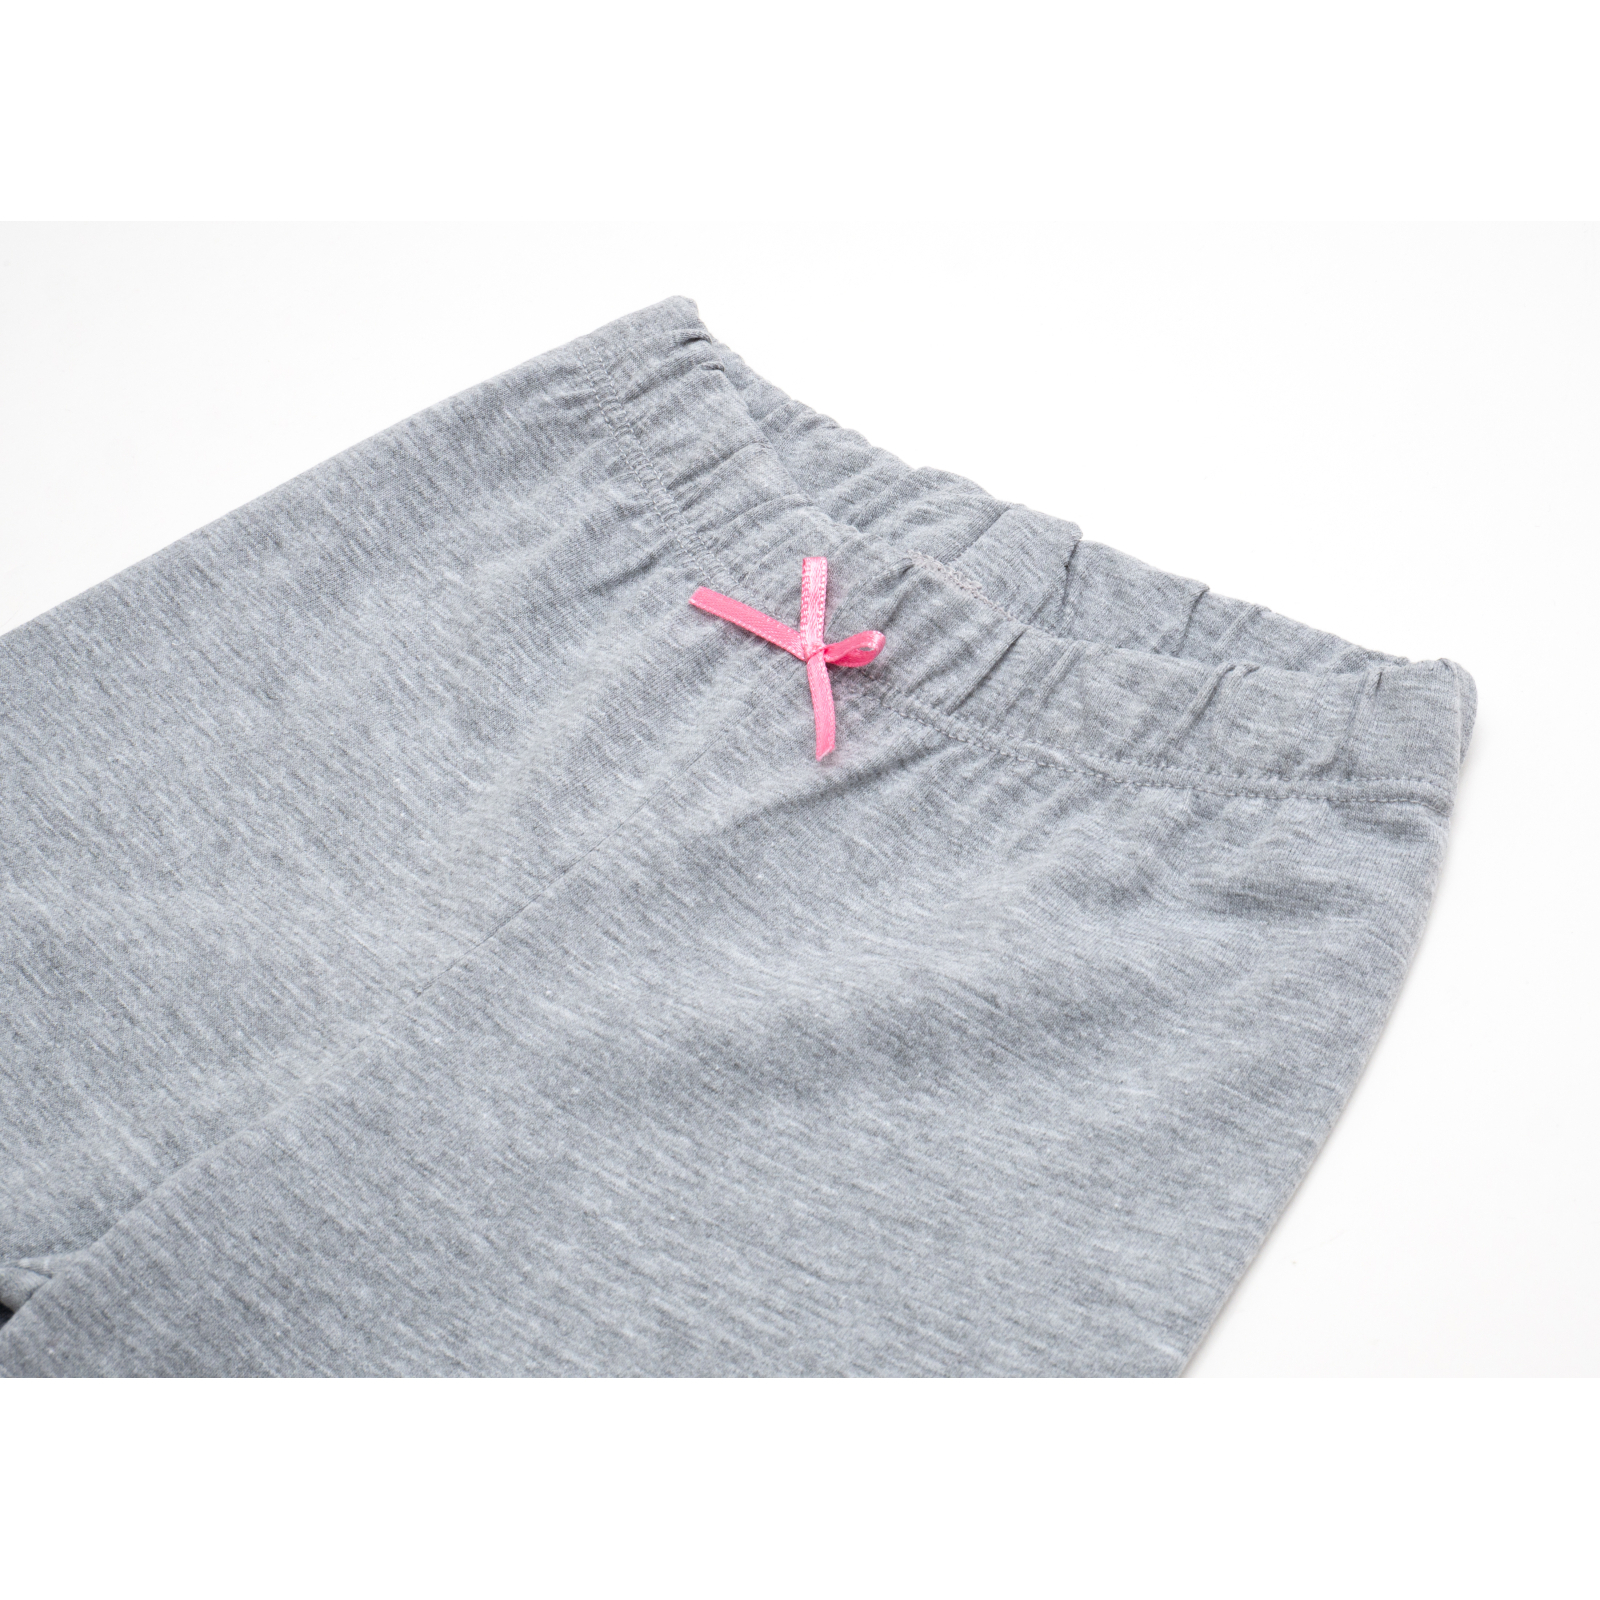 Пижама Matilda со звездочками (7167-122G-pink) изображение 8